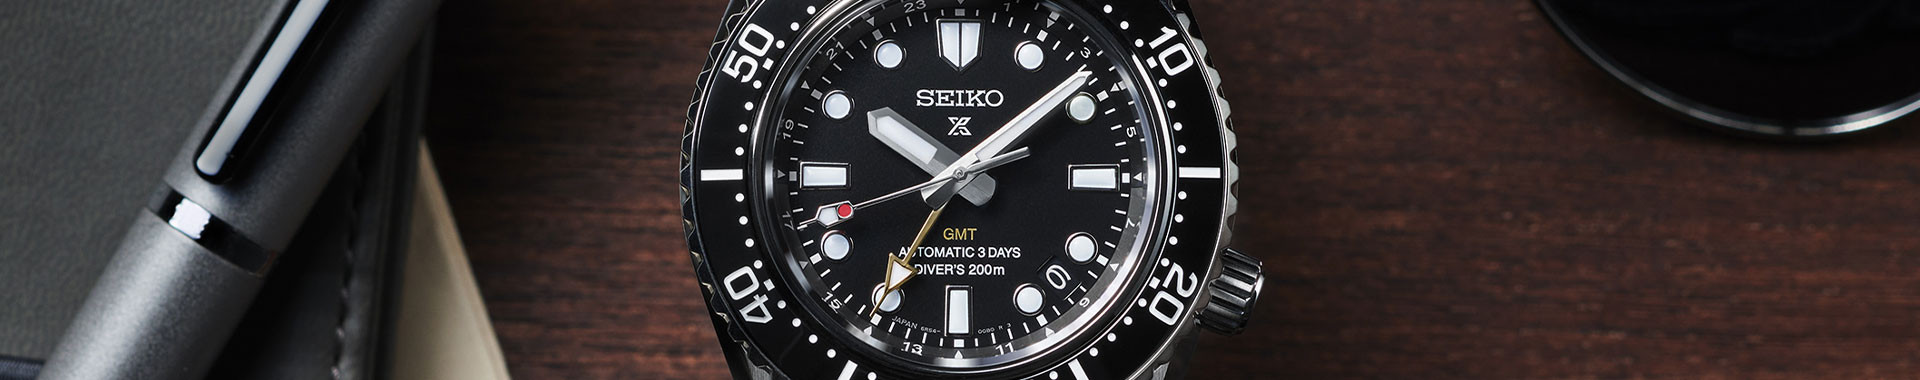 Nouveautés montre - Seiko officiel